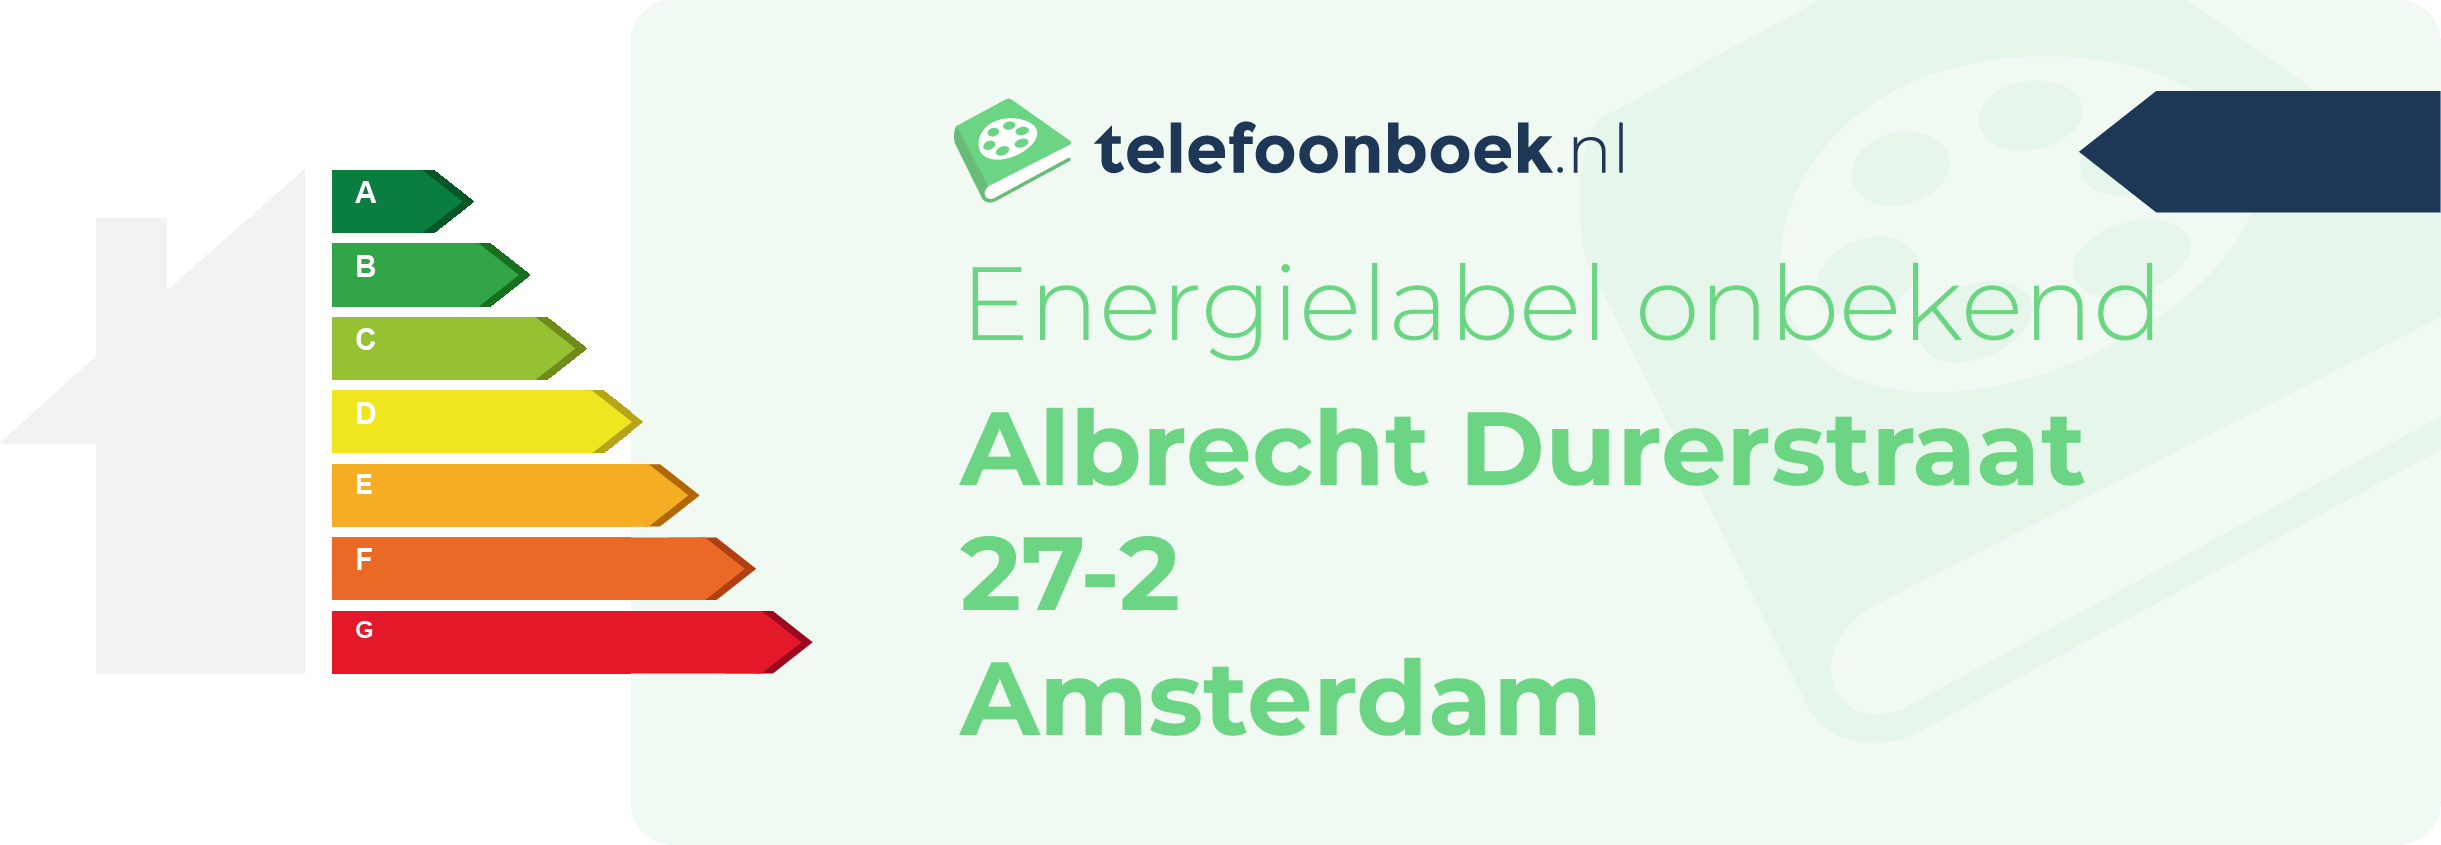 Energielabel Albrecht Durerstraat 27-2 Amsterdam